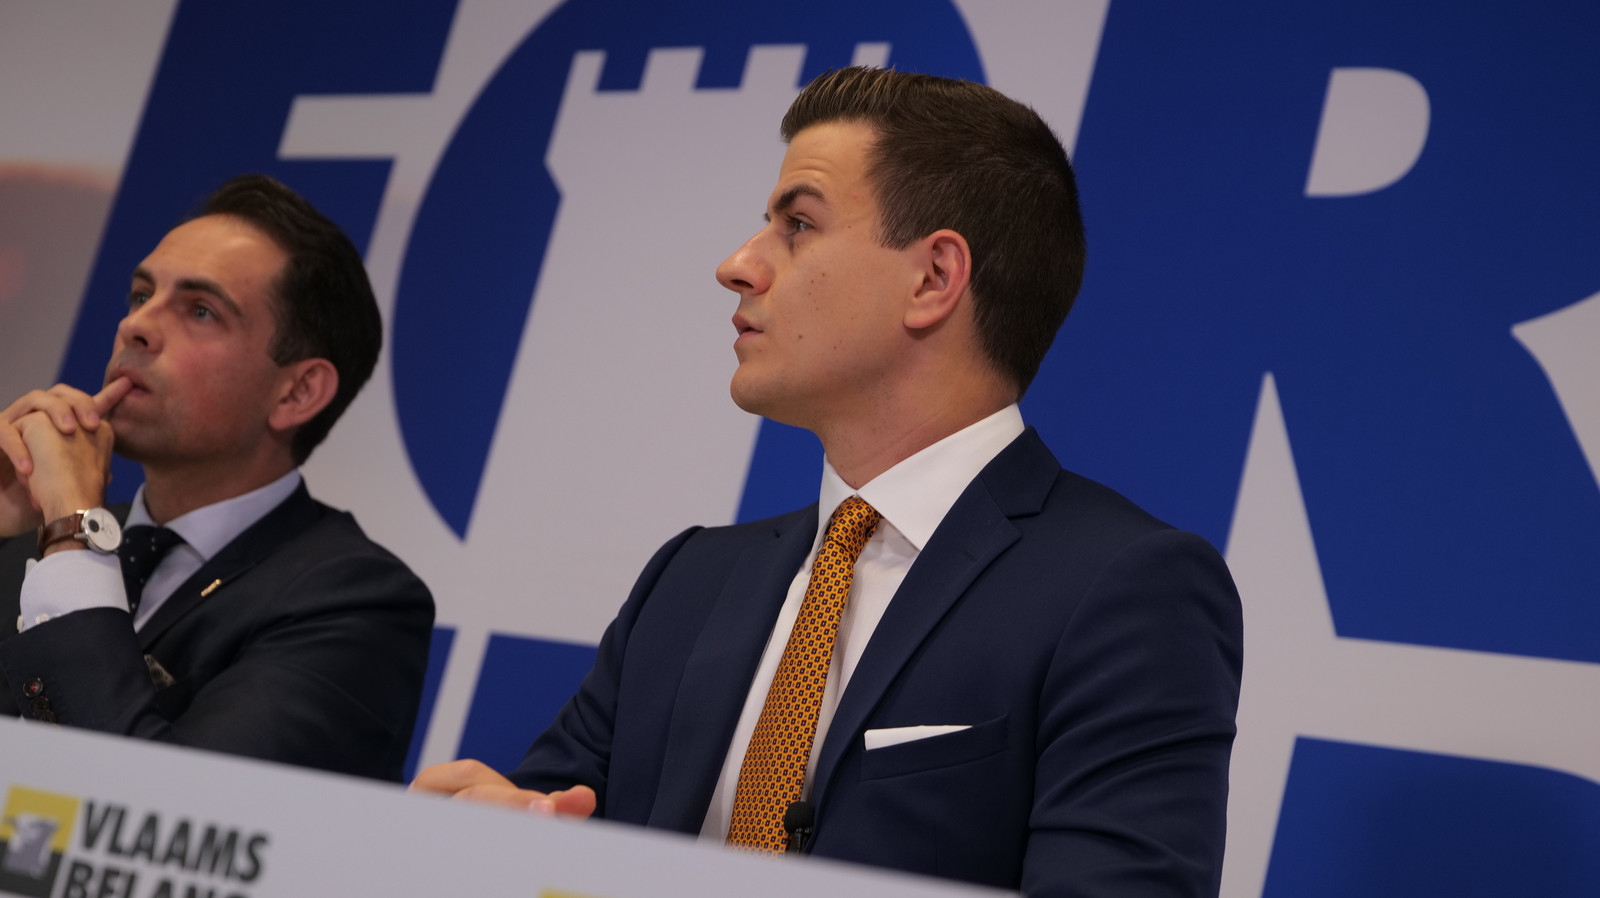 Kamerlid Dries Van Langenhove en partijvoorzitter Tom Van Grieken.